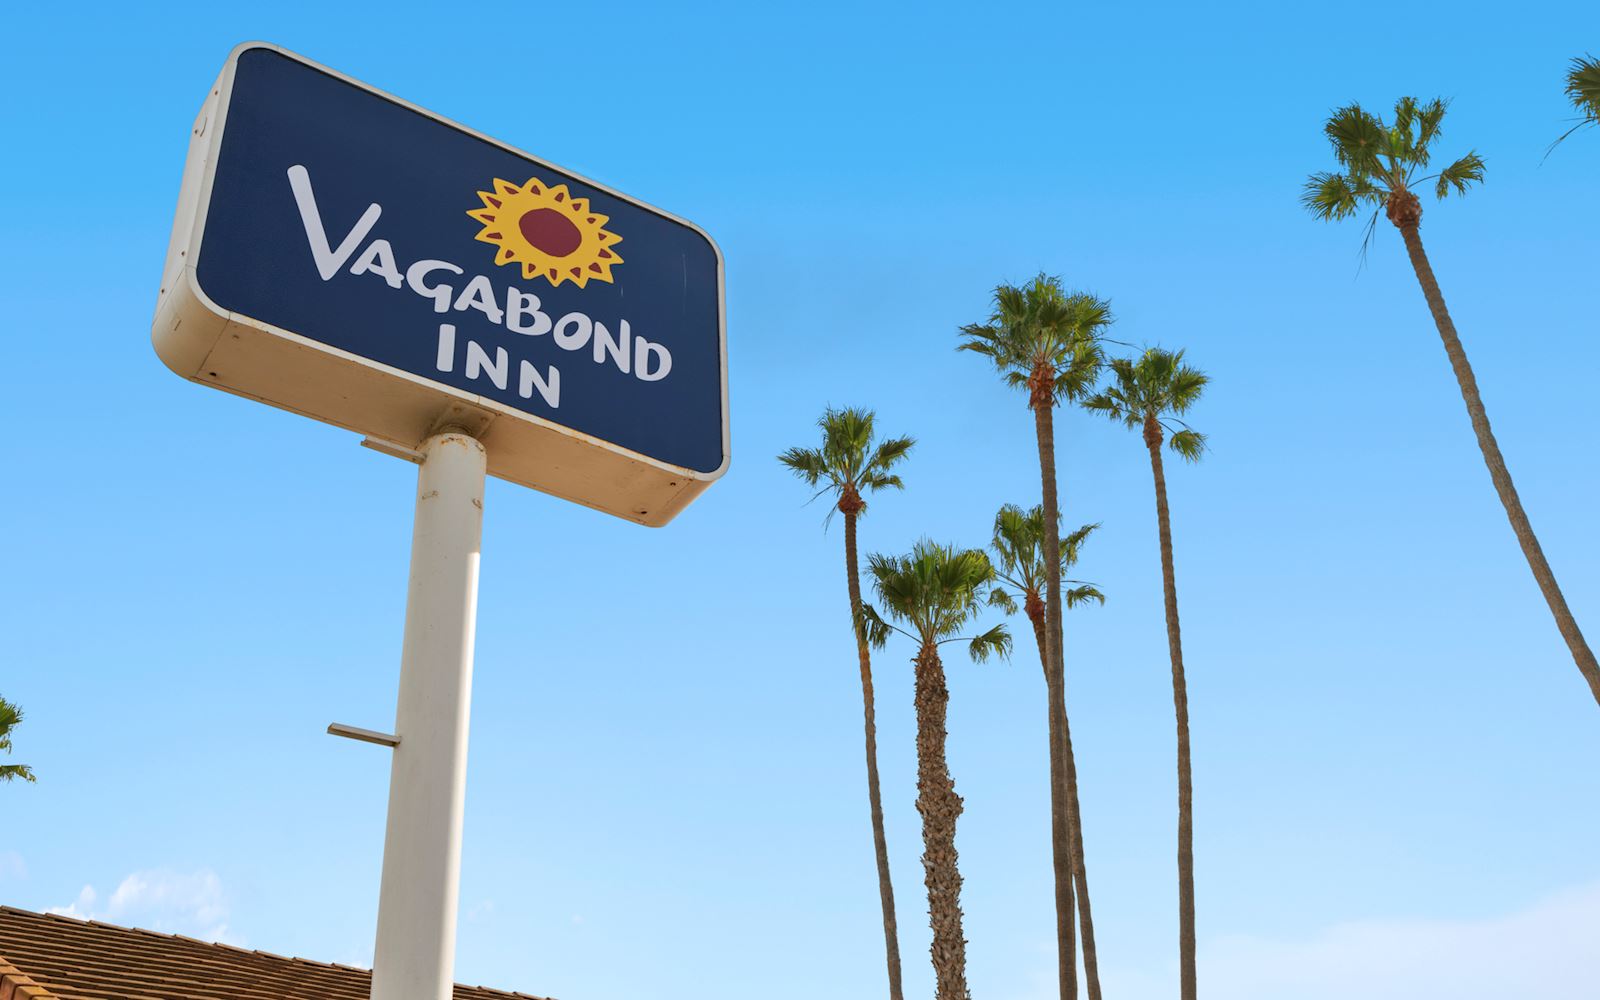 Hotel Specials of Vagabond Inn - Ventura